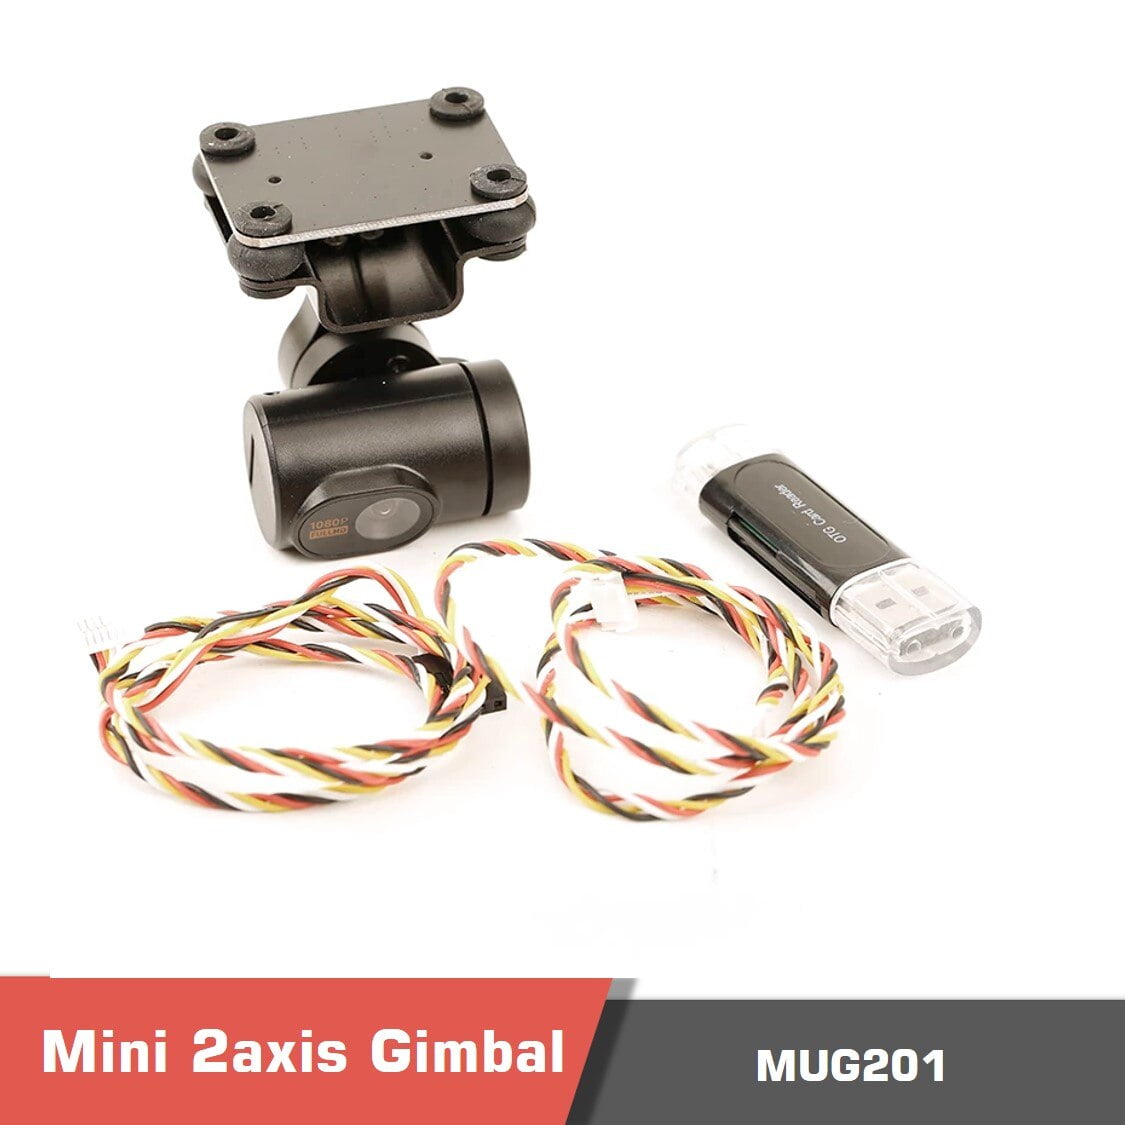 Gimbal MUG201 Mini 2axis for Drones